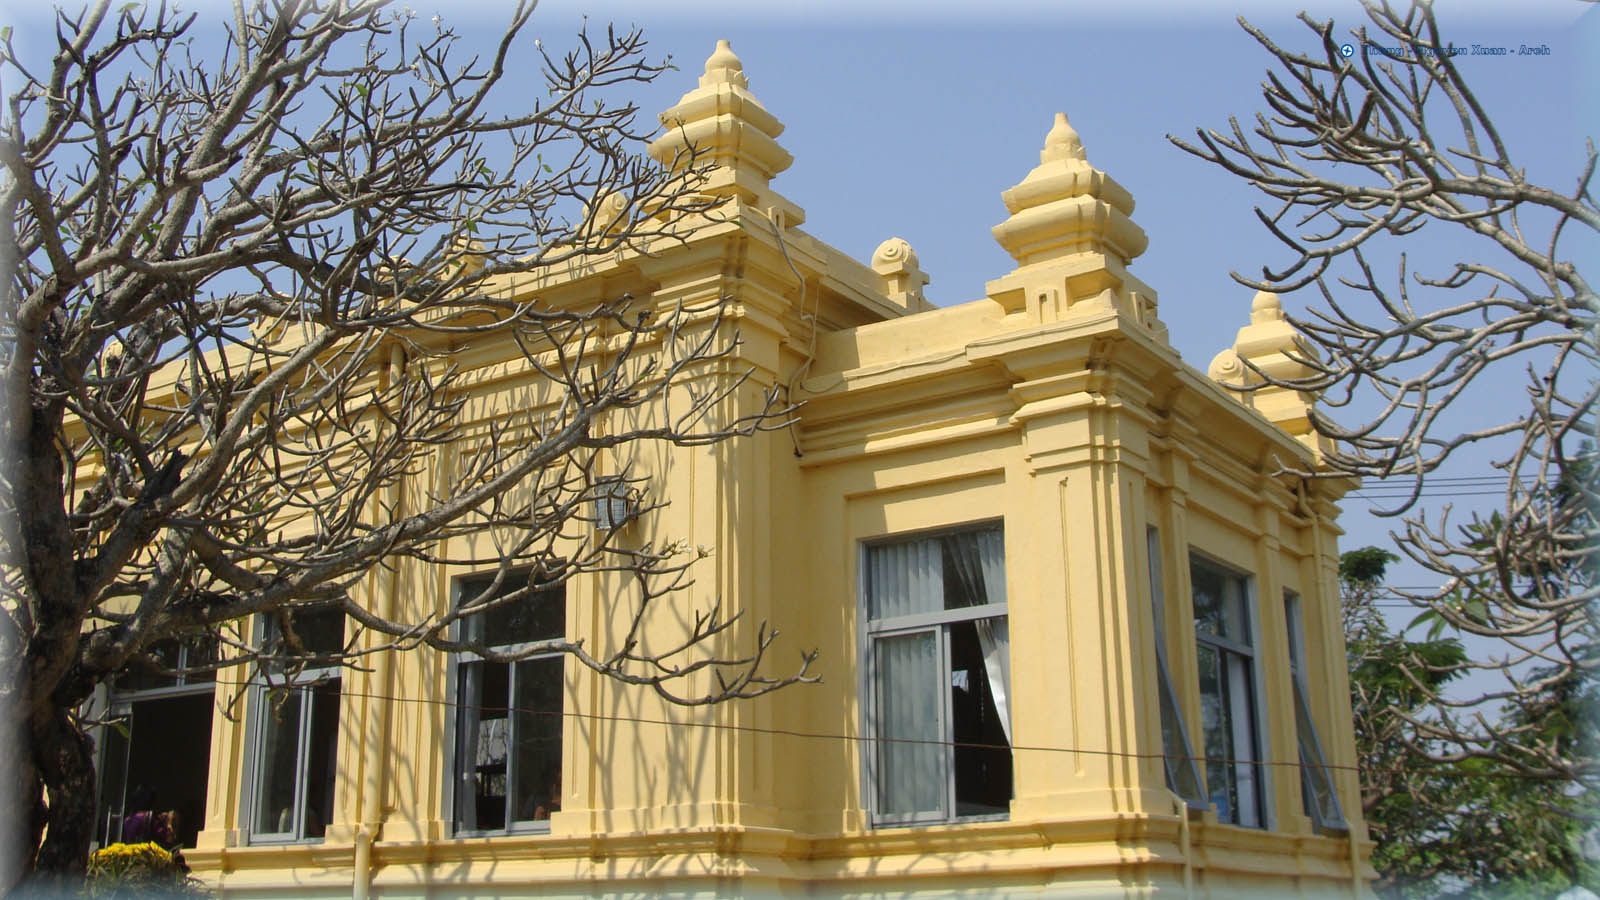 Đà Nẵng giữ nguyên hiện trạng Bảo tàng Điêu khắc Champa 